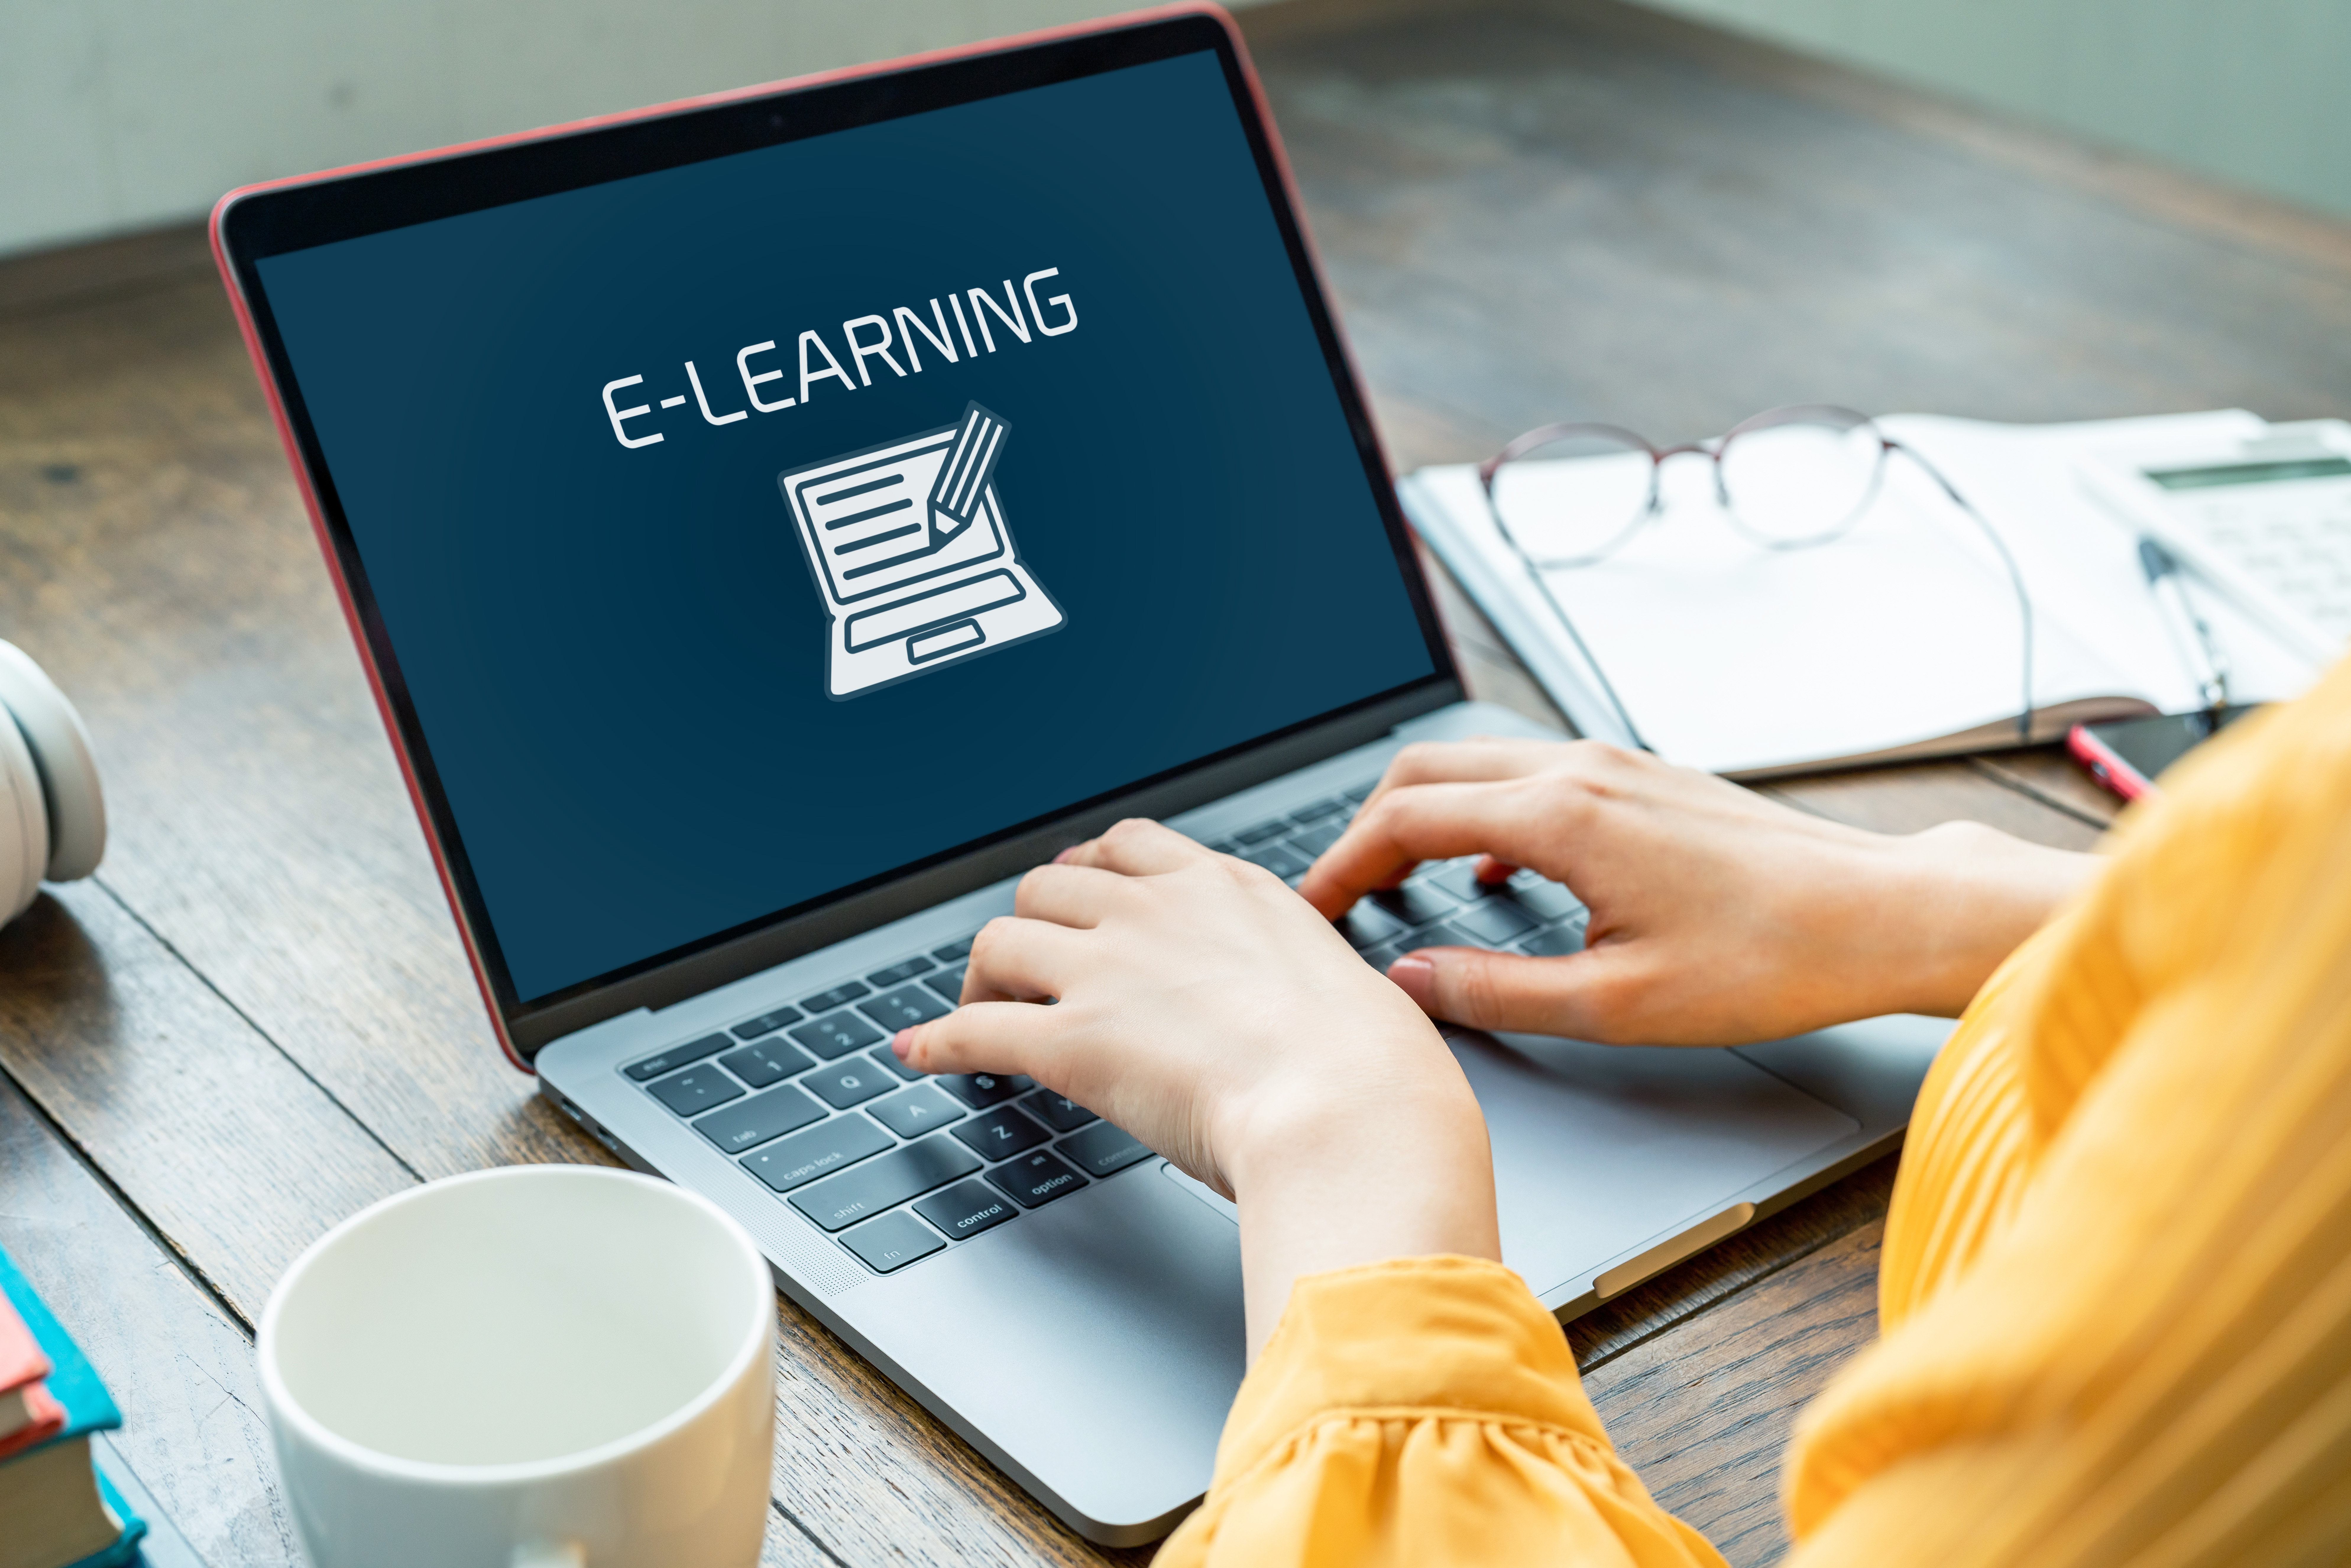 Урок электронные курсы. Обучение в интернете картинки. Электронное обучение e-Learning. Интернет образование.